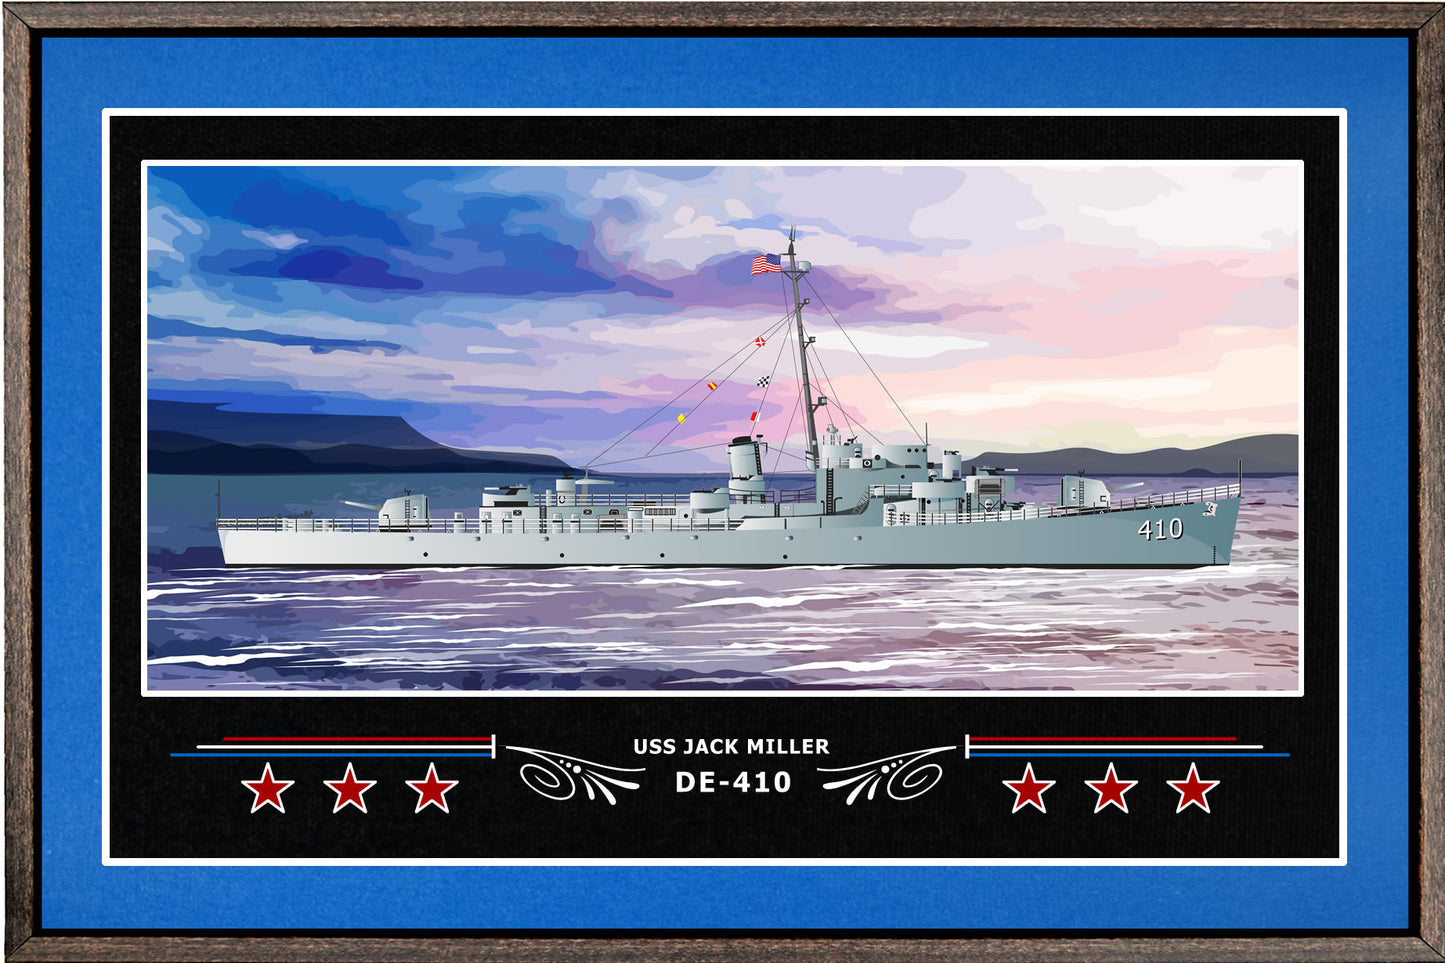 USS JACK MILLER DE 410 BOX FRAMED CANVAS ART BLUE